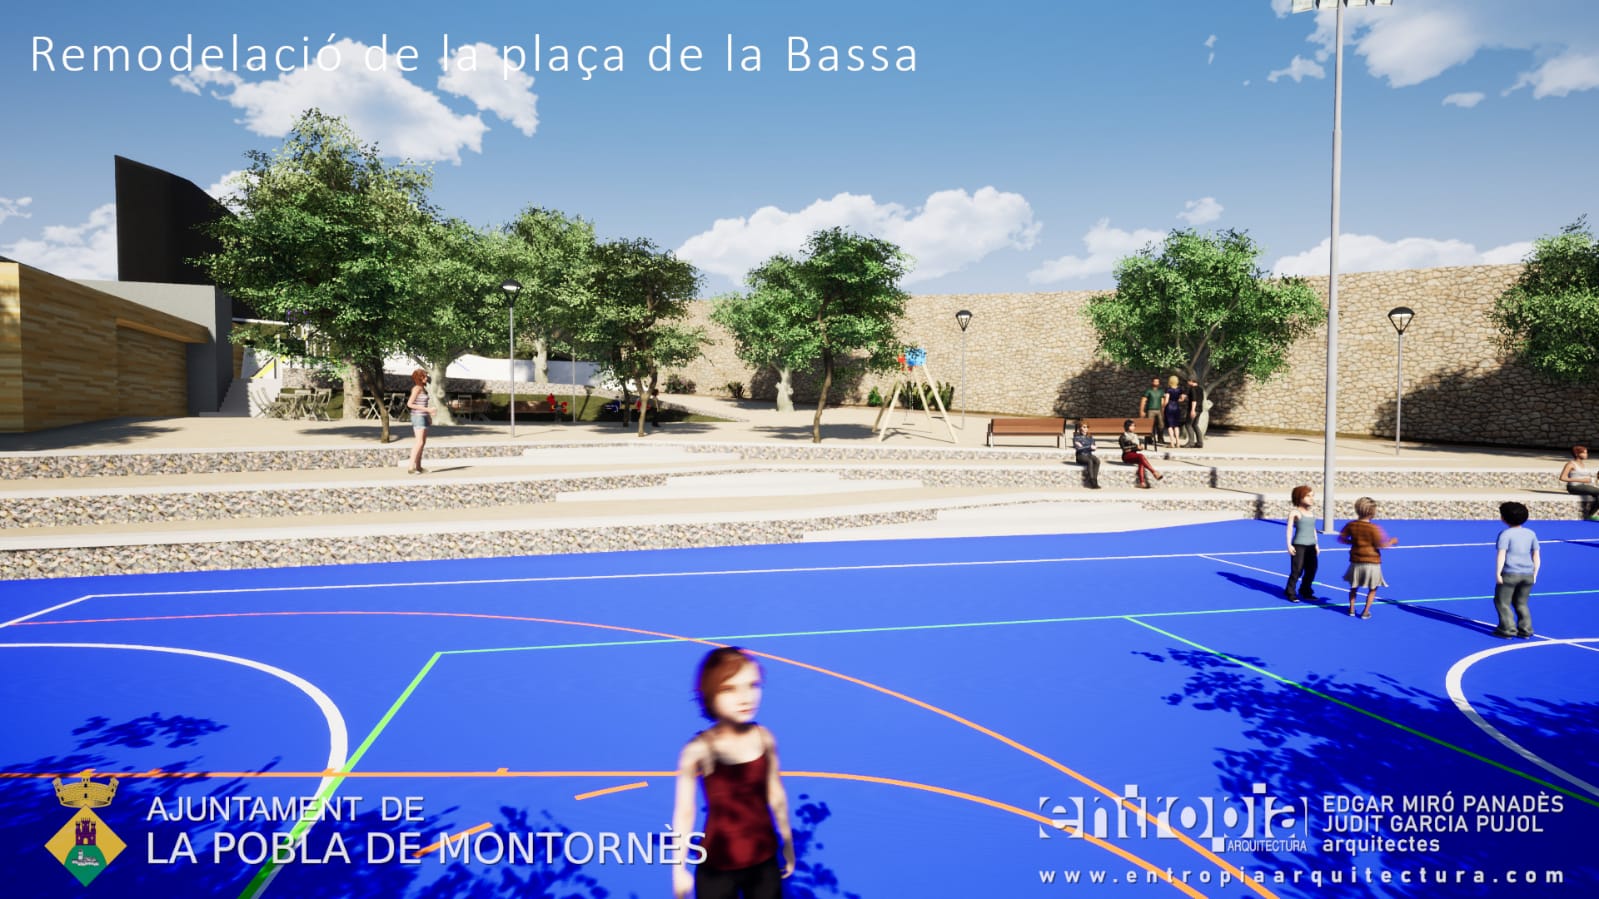 Les obres de remodelació de la plaça de la Bassa començaran el setembre